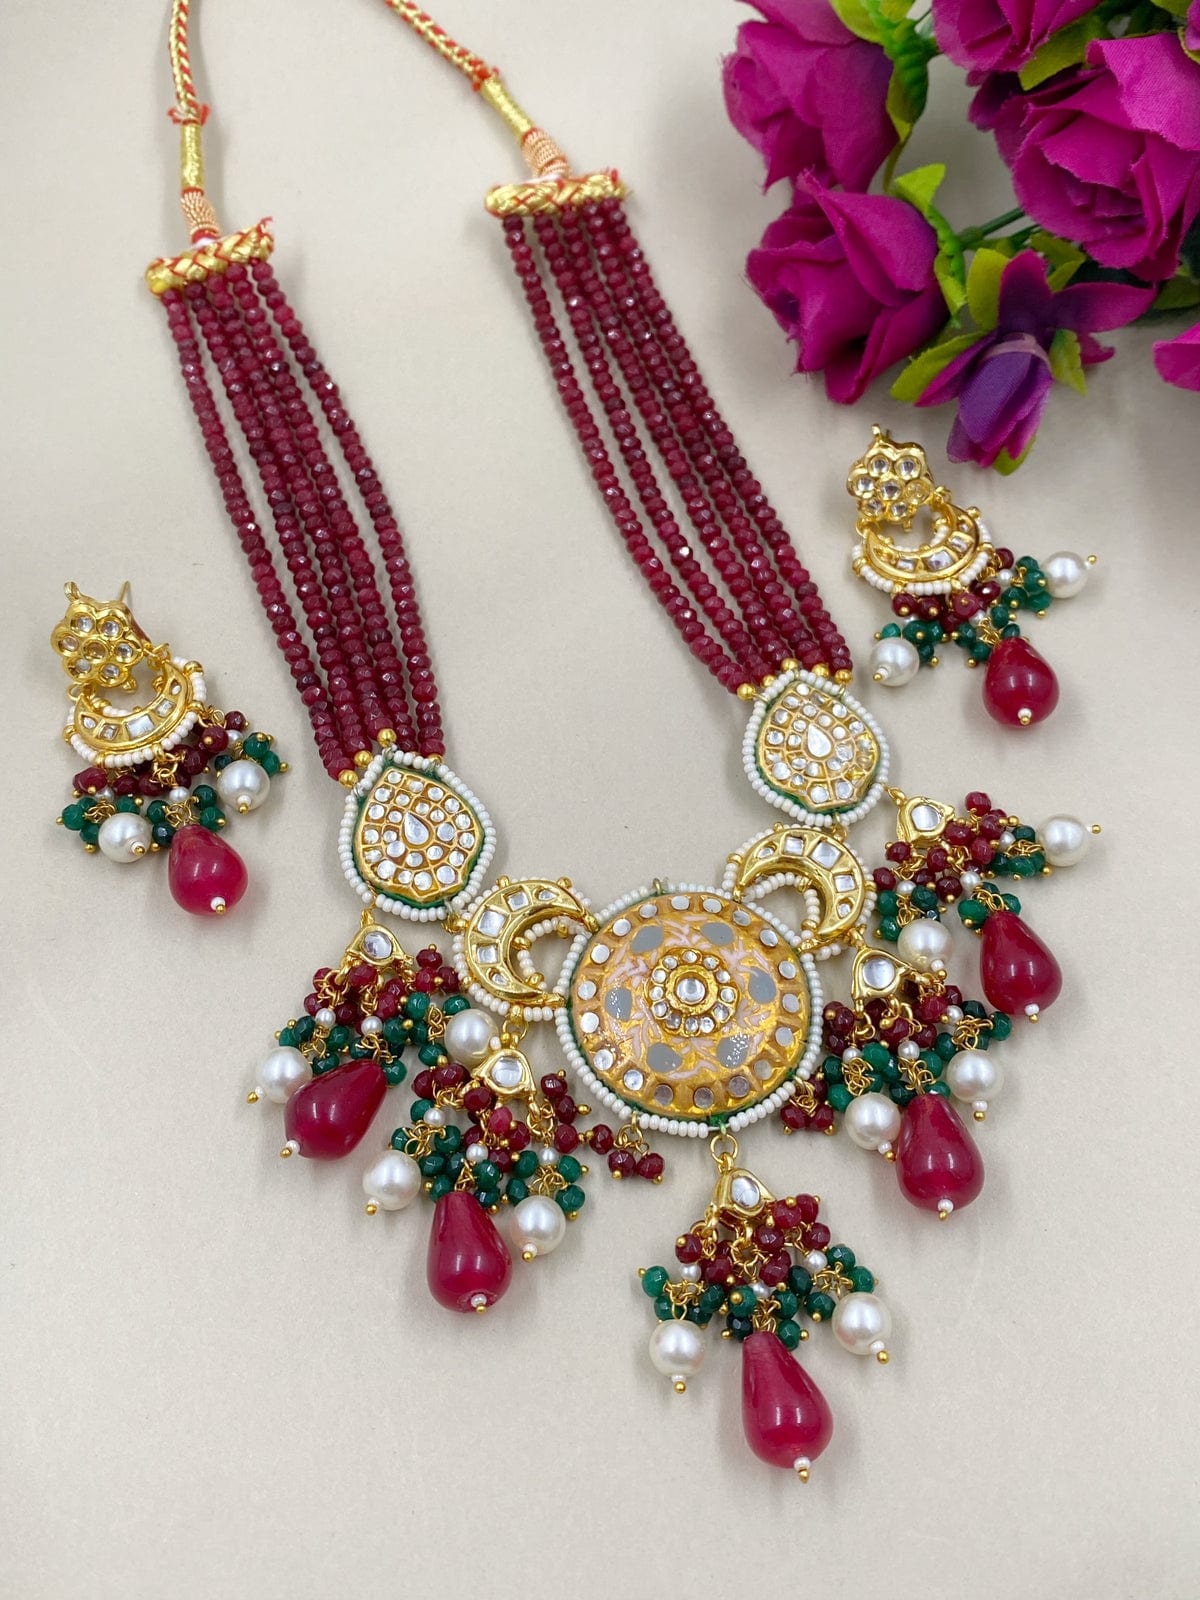 Designer Statement Look Meenakari Jewellery Necklace Set By Gehna Shop Meenakari Necklace Sets